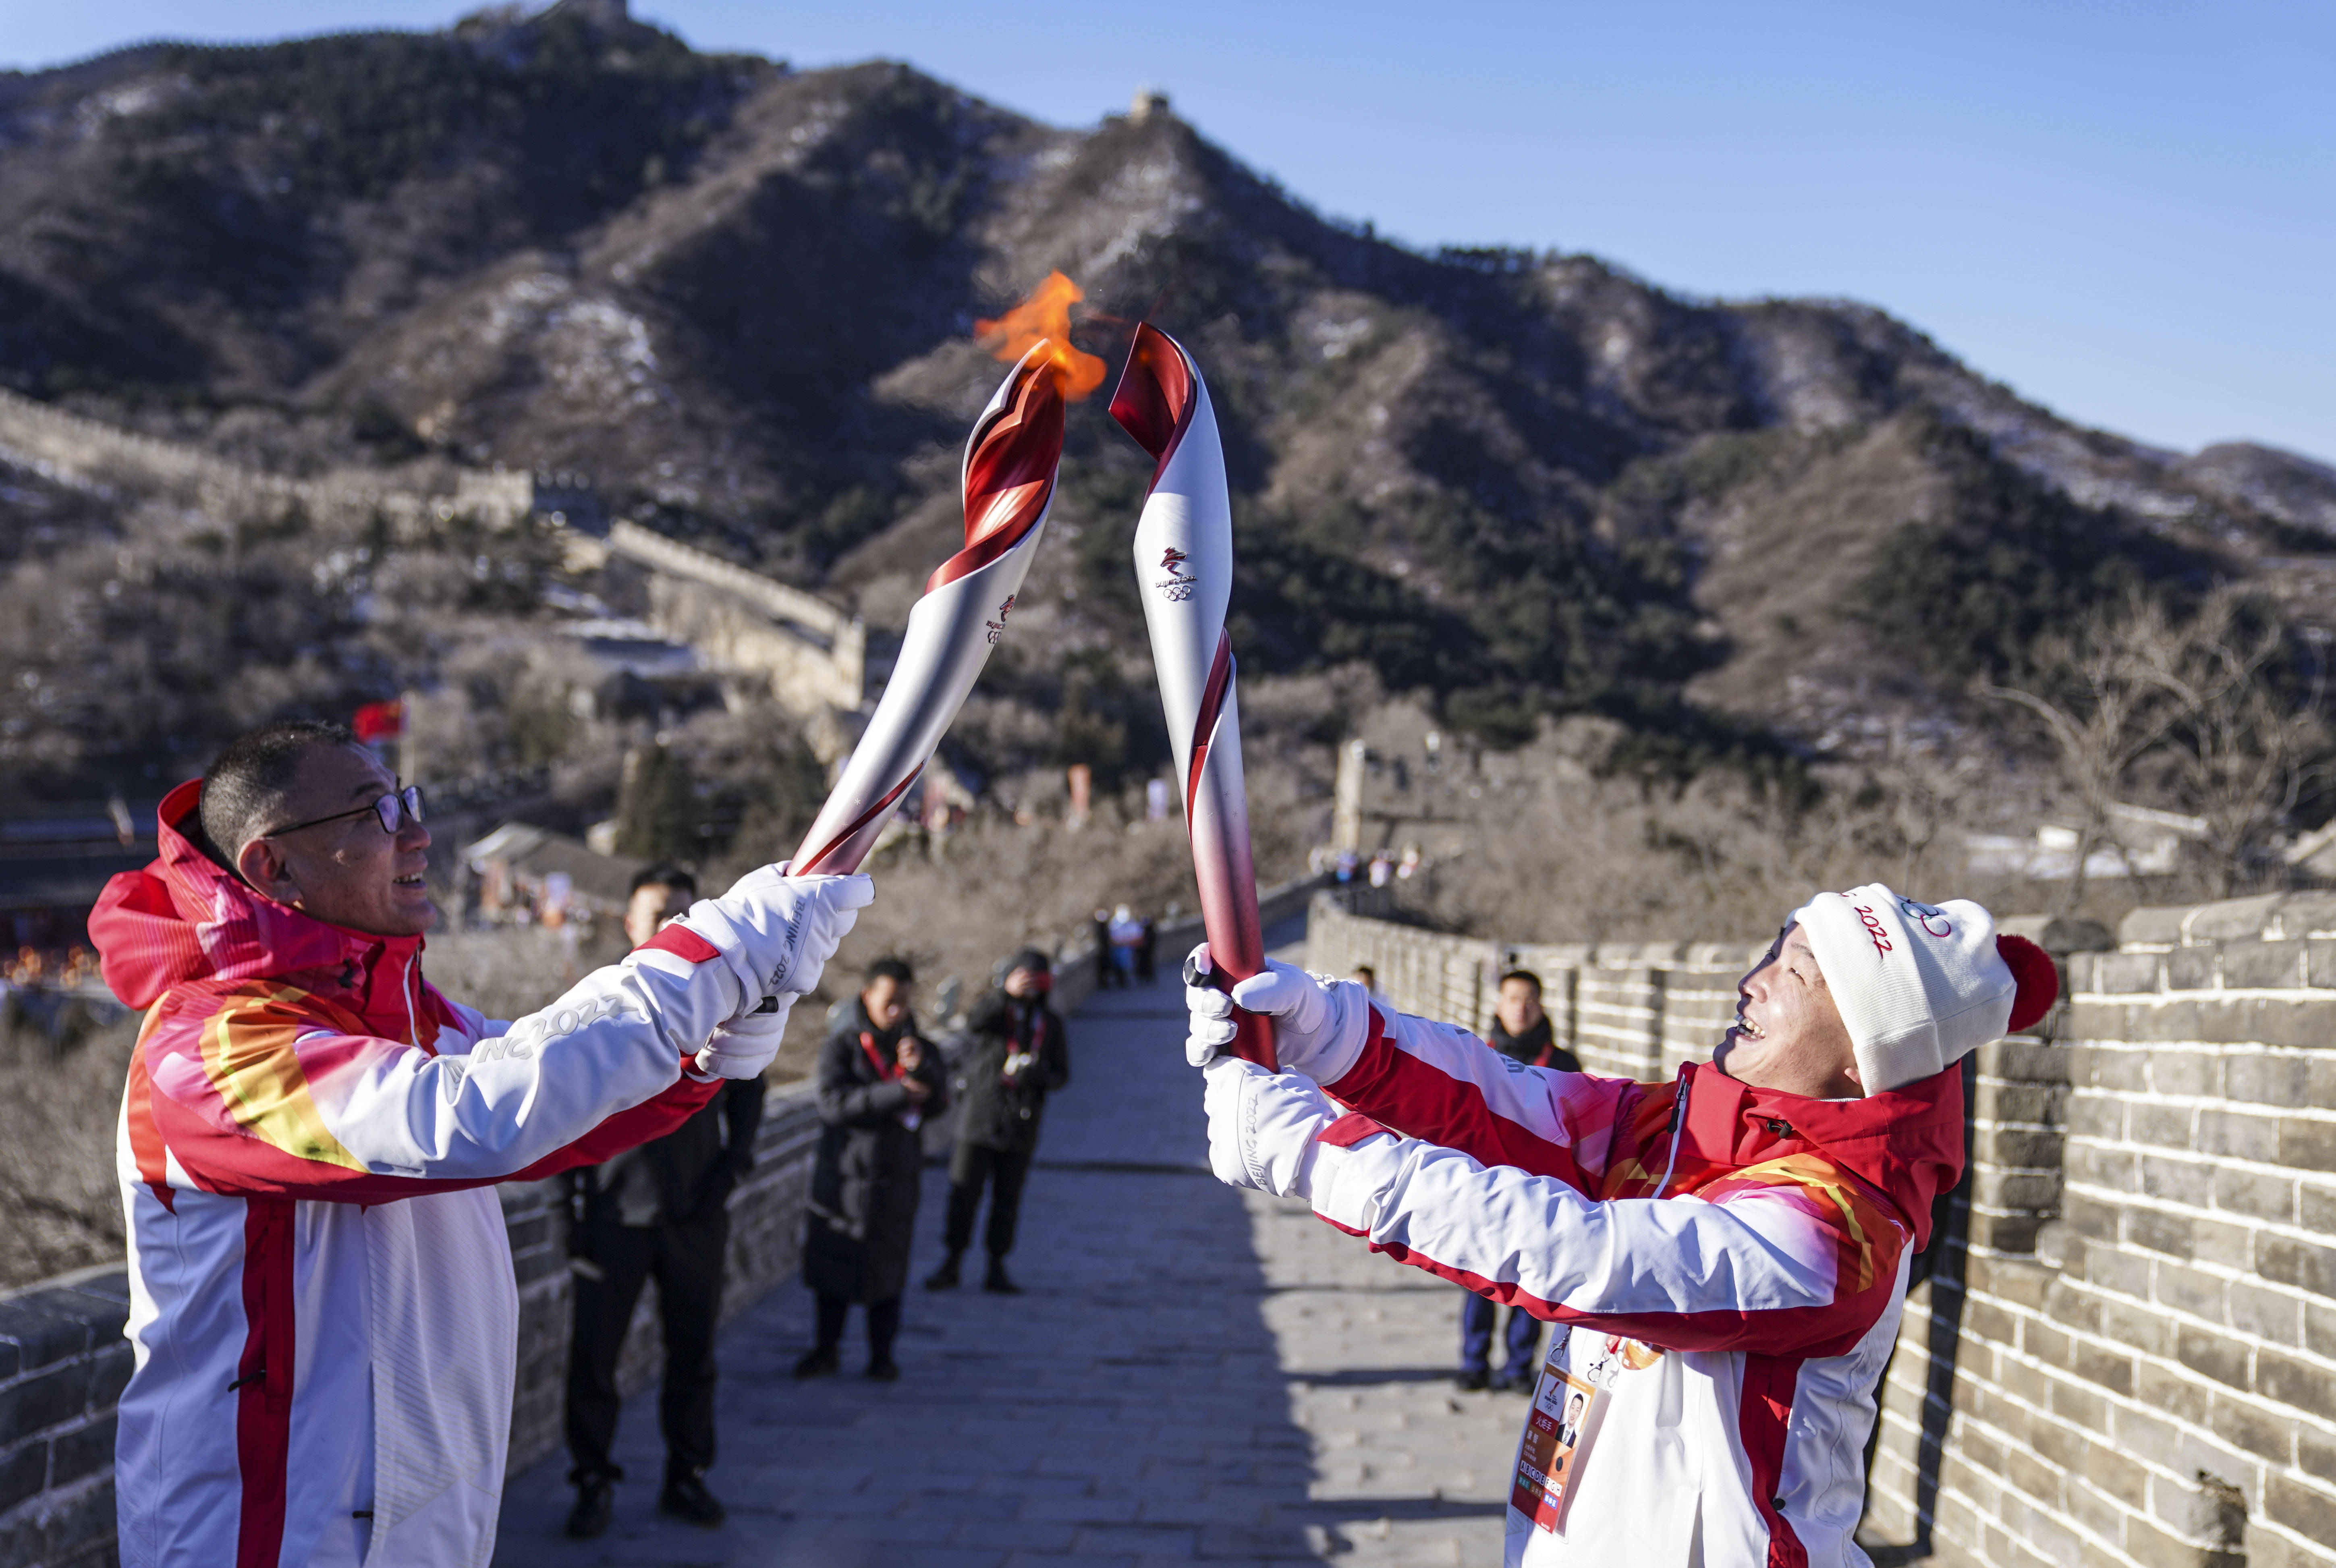 北京冬奥会的火炬图片图片